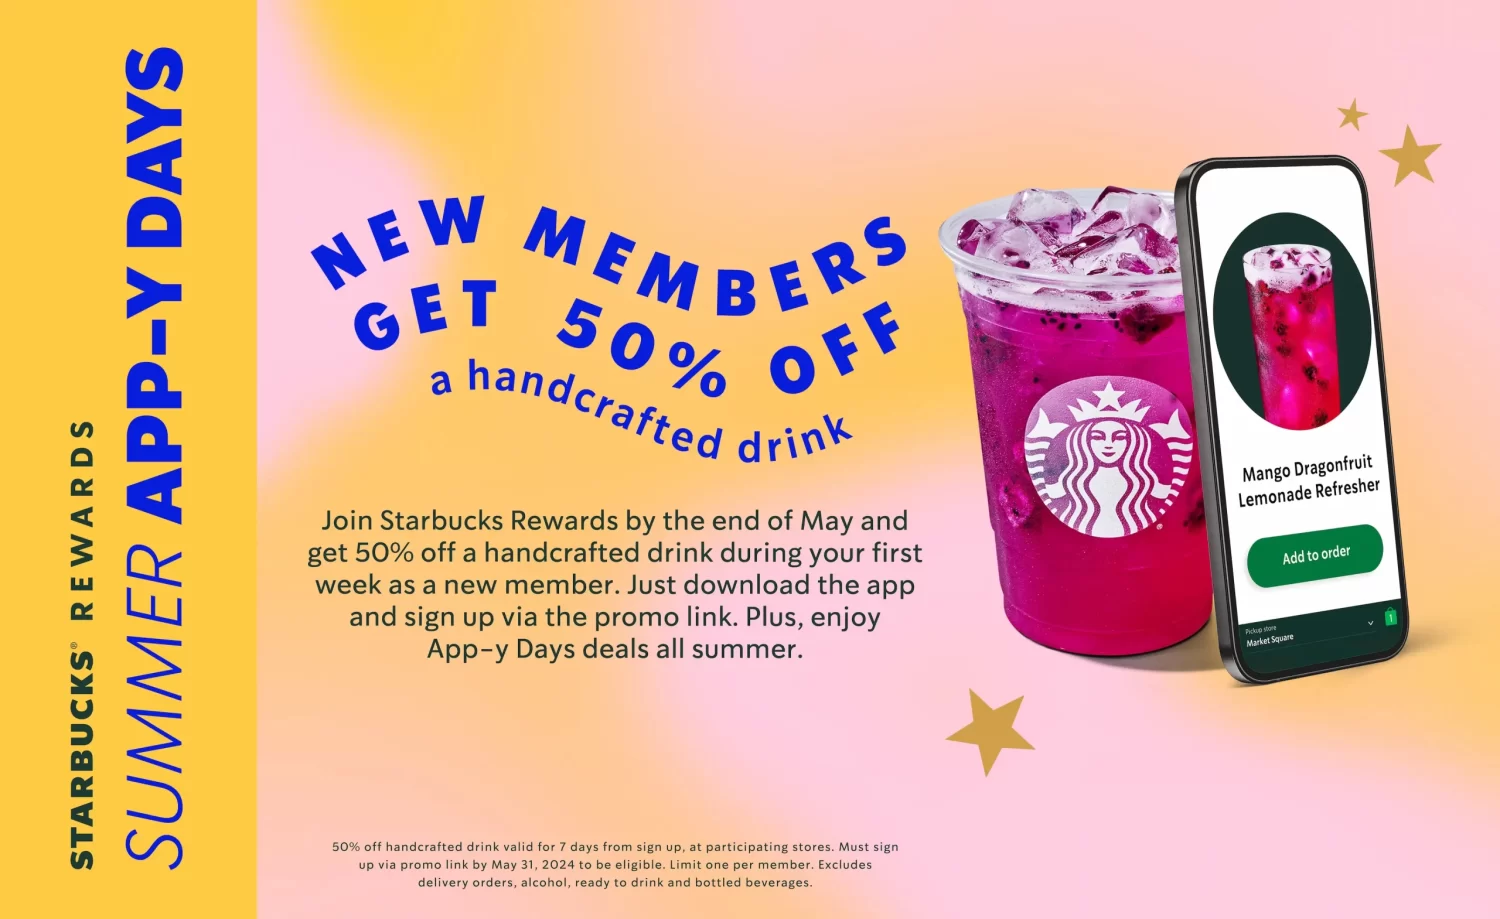 Starbucks members reward